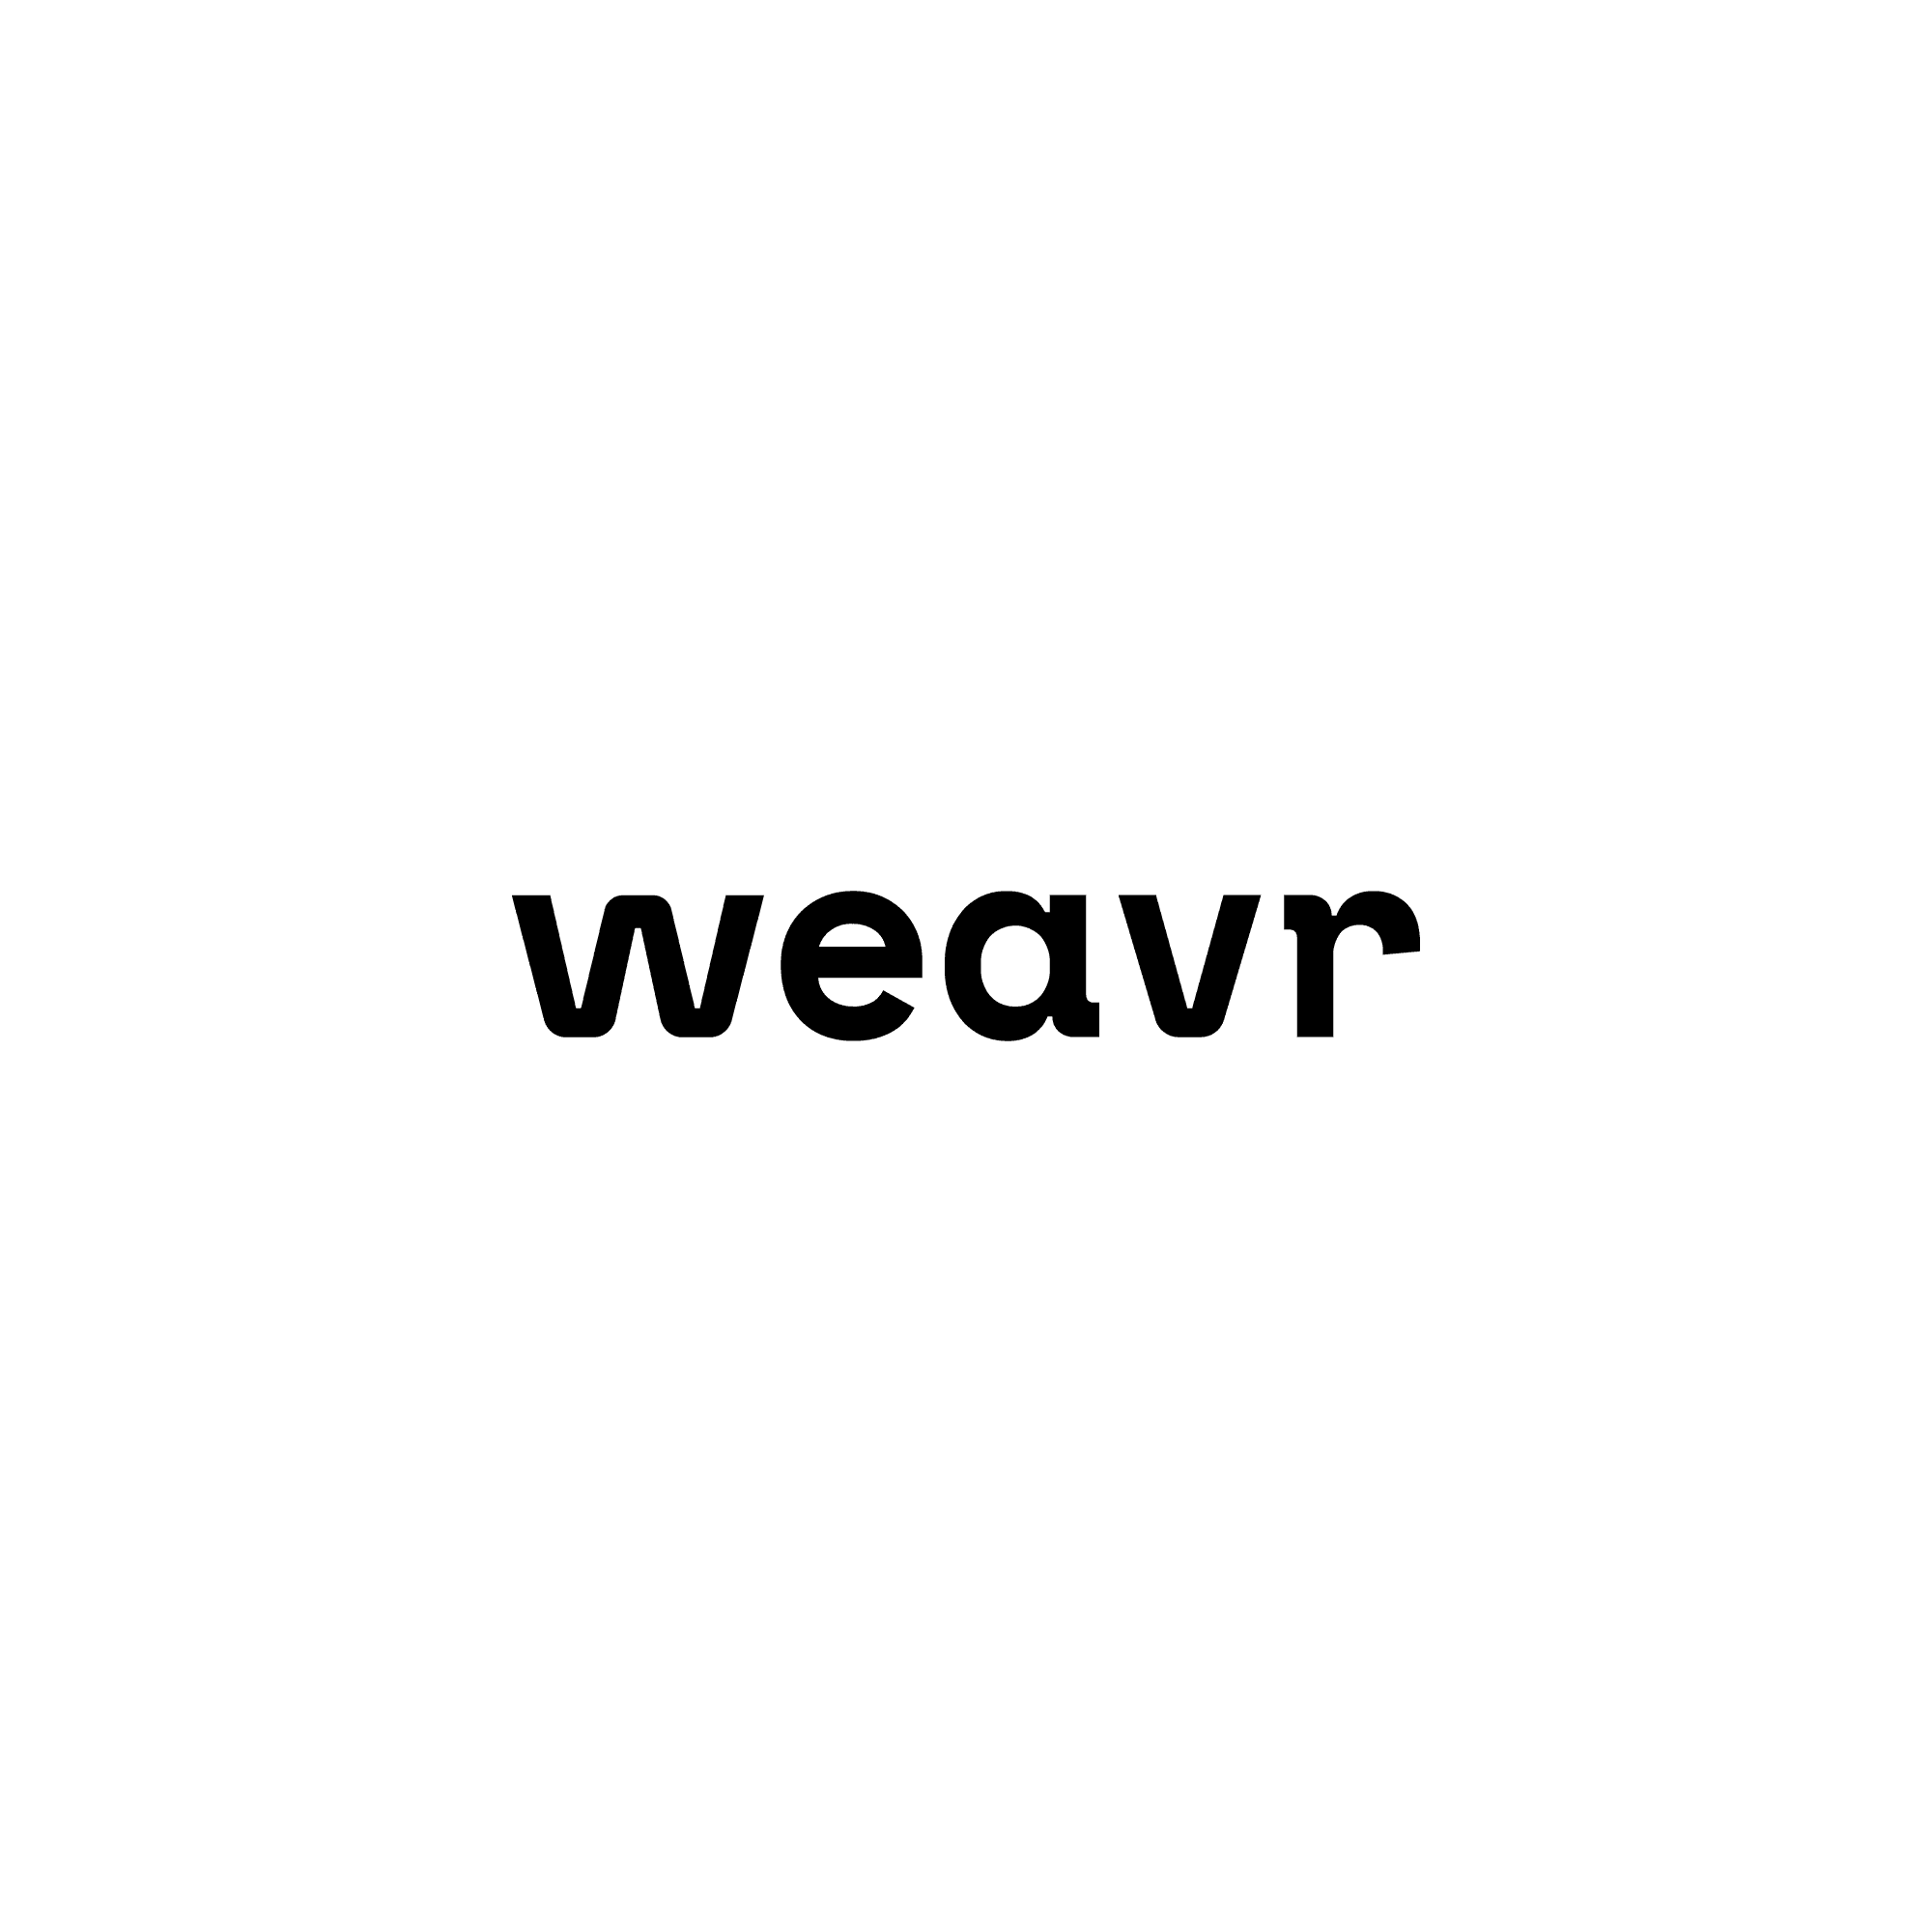 Weavr-logo-Black-on-white-1